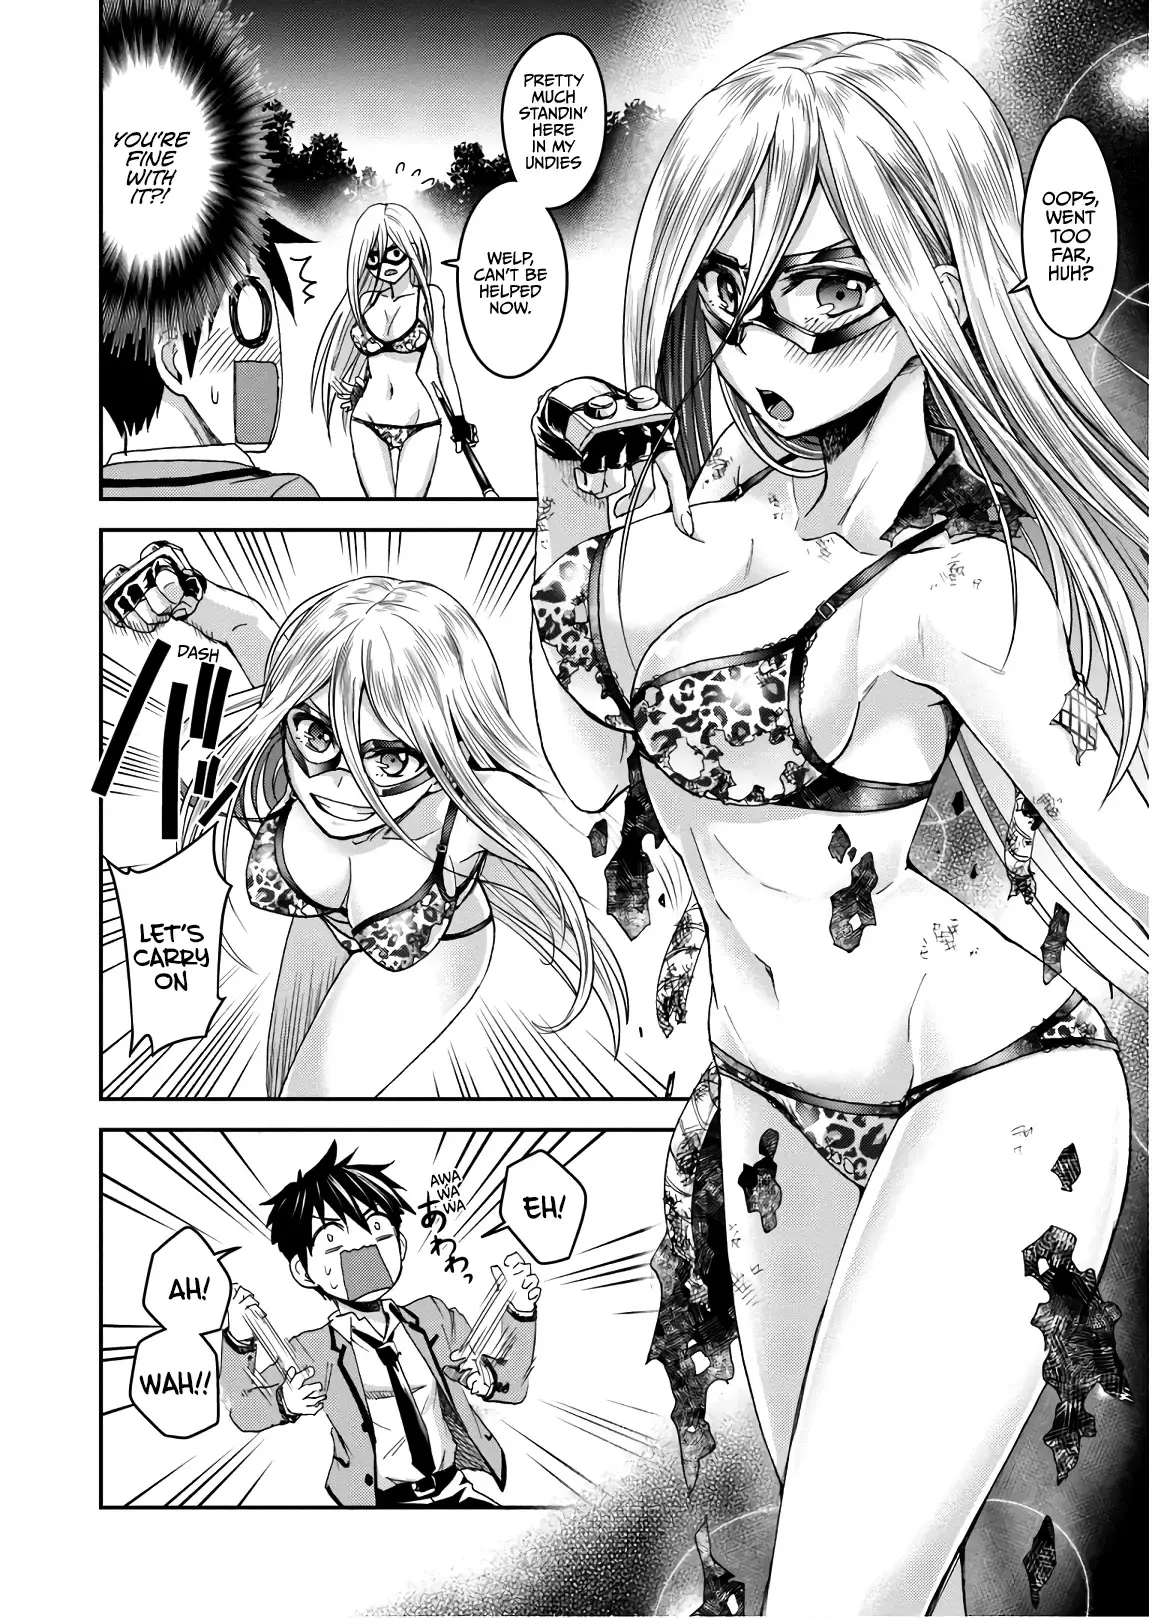 Shinobi Kill - 7 page 2